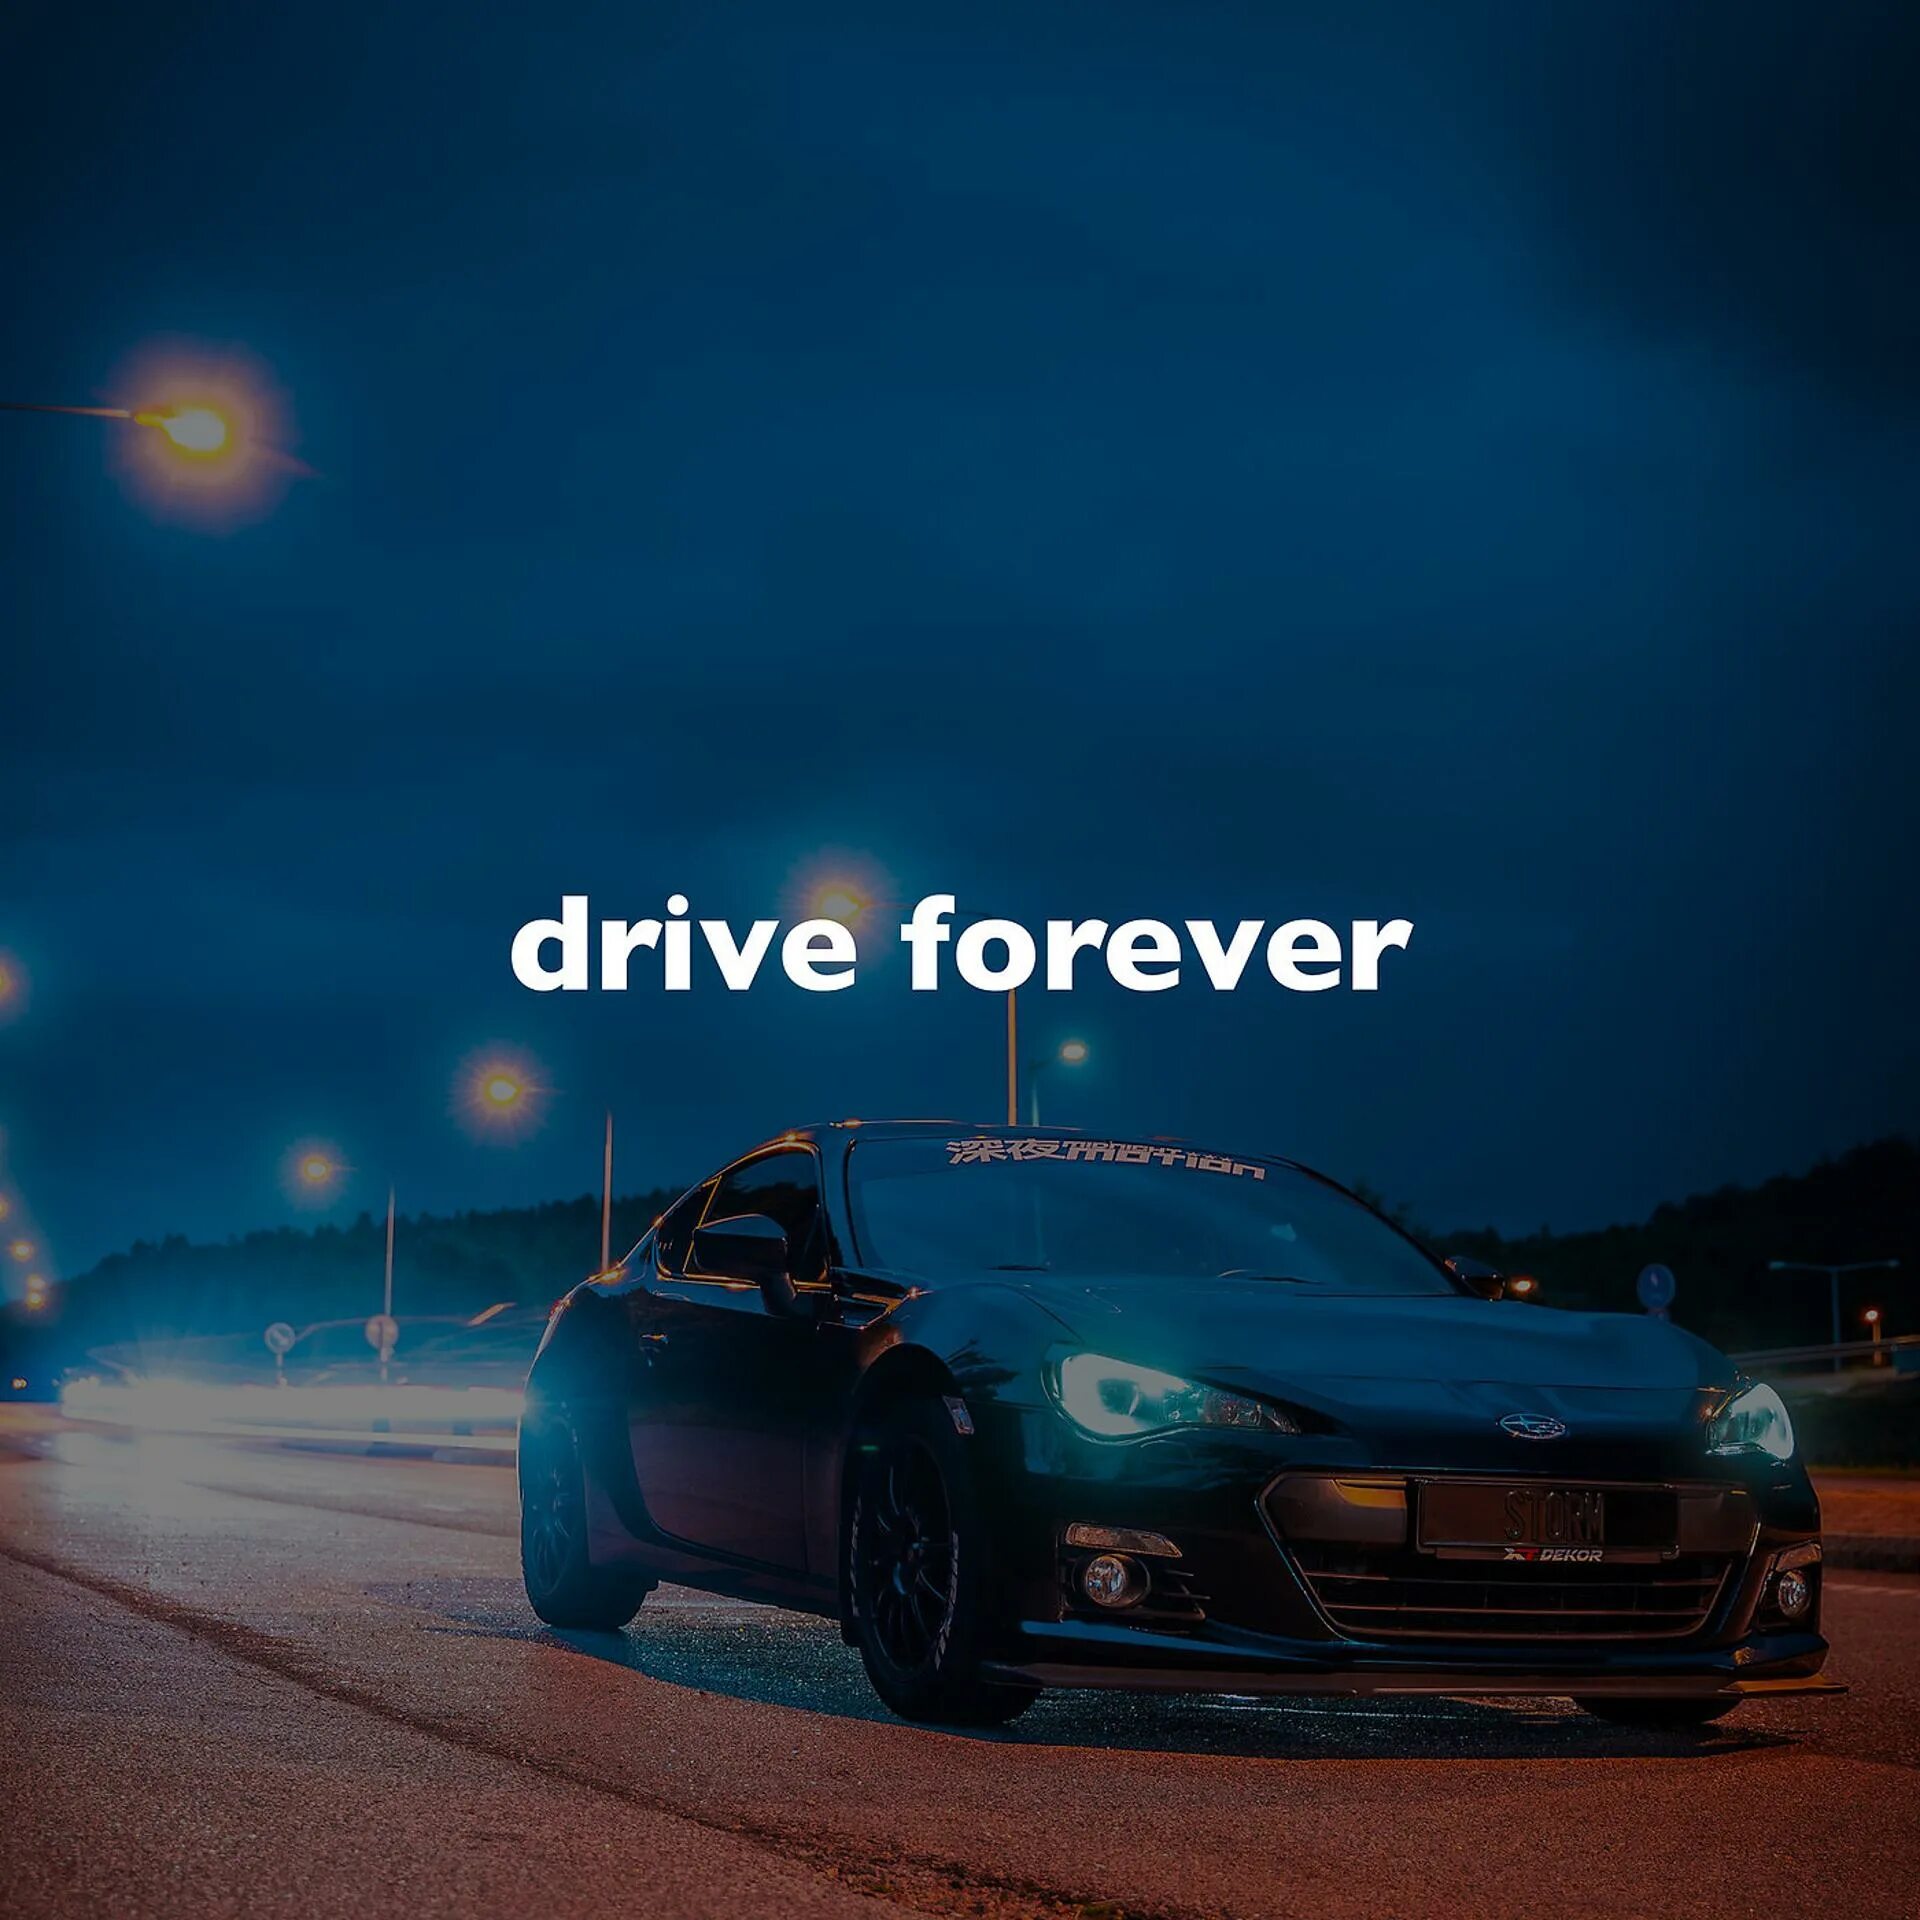 Drive Forever. Drive Forever Forever. Drive Forever Remix. Drive Forever Slowed. Drive forever babbeo